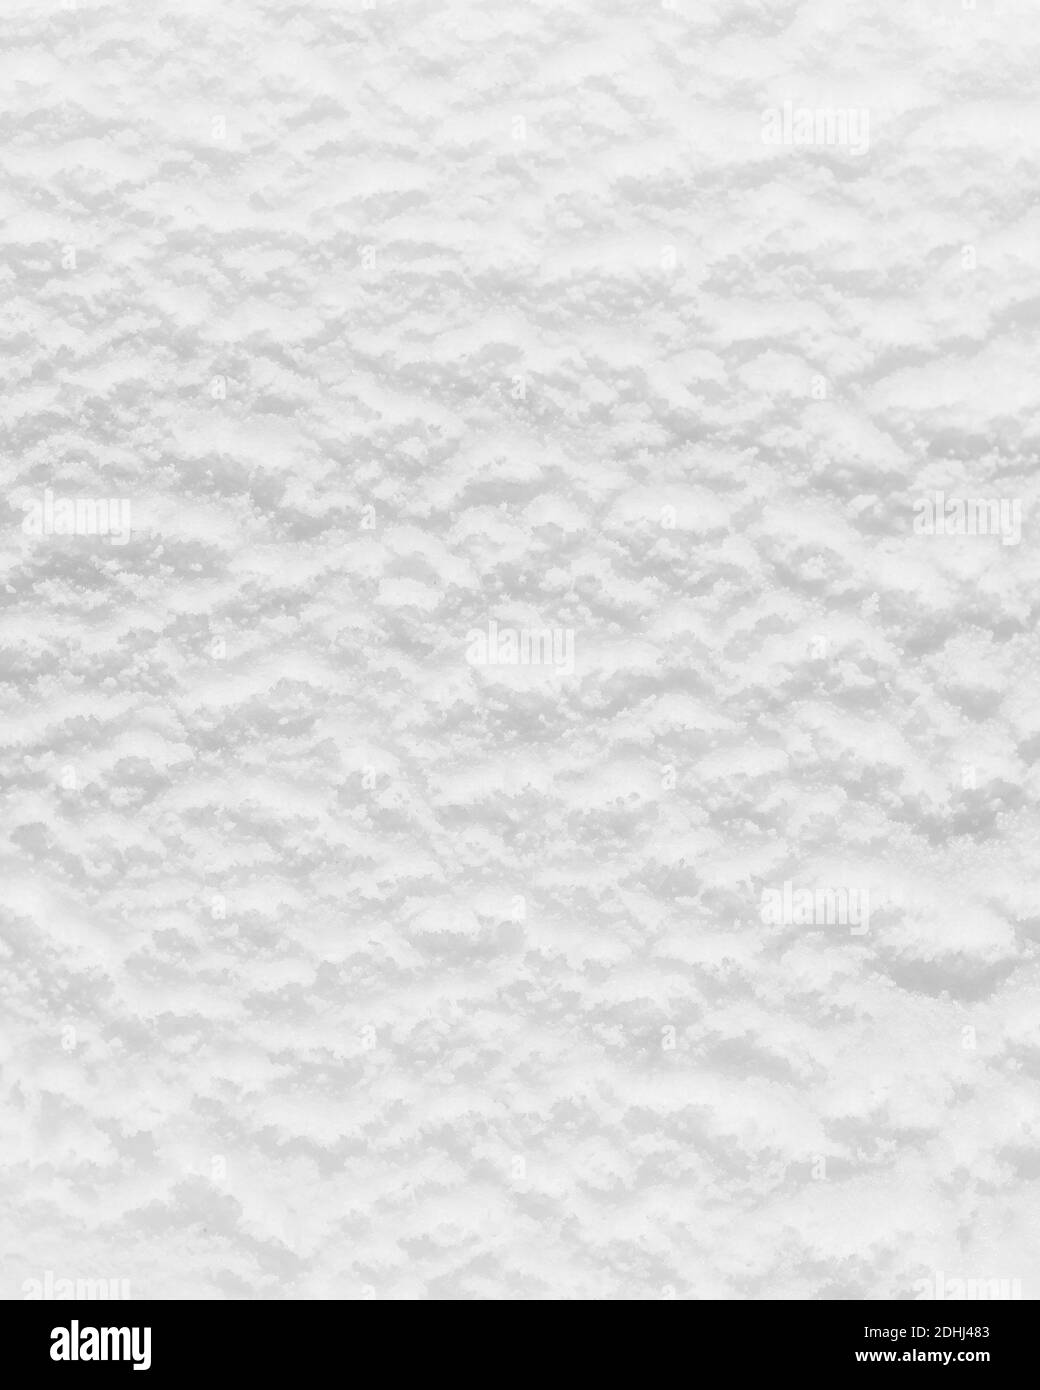 gros plan de la surface de la glace blanche Banque D'Images